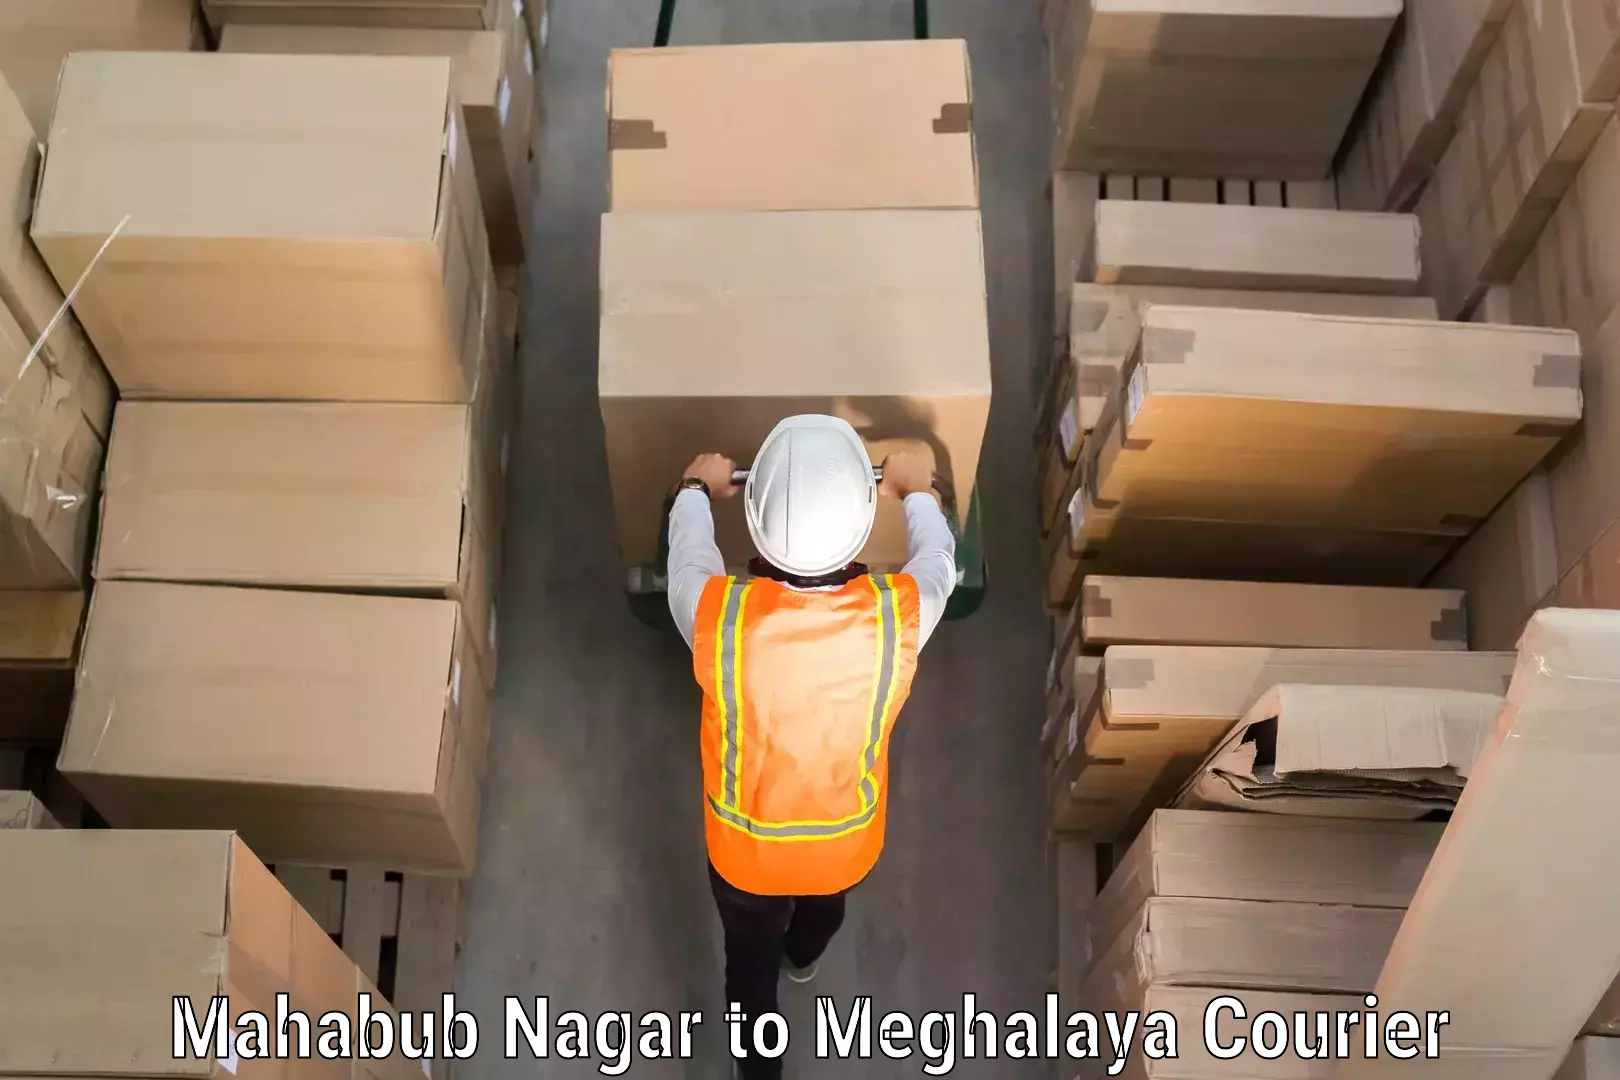 Baggage shipping service Mahabub Nagar to Shillong